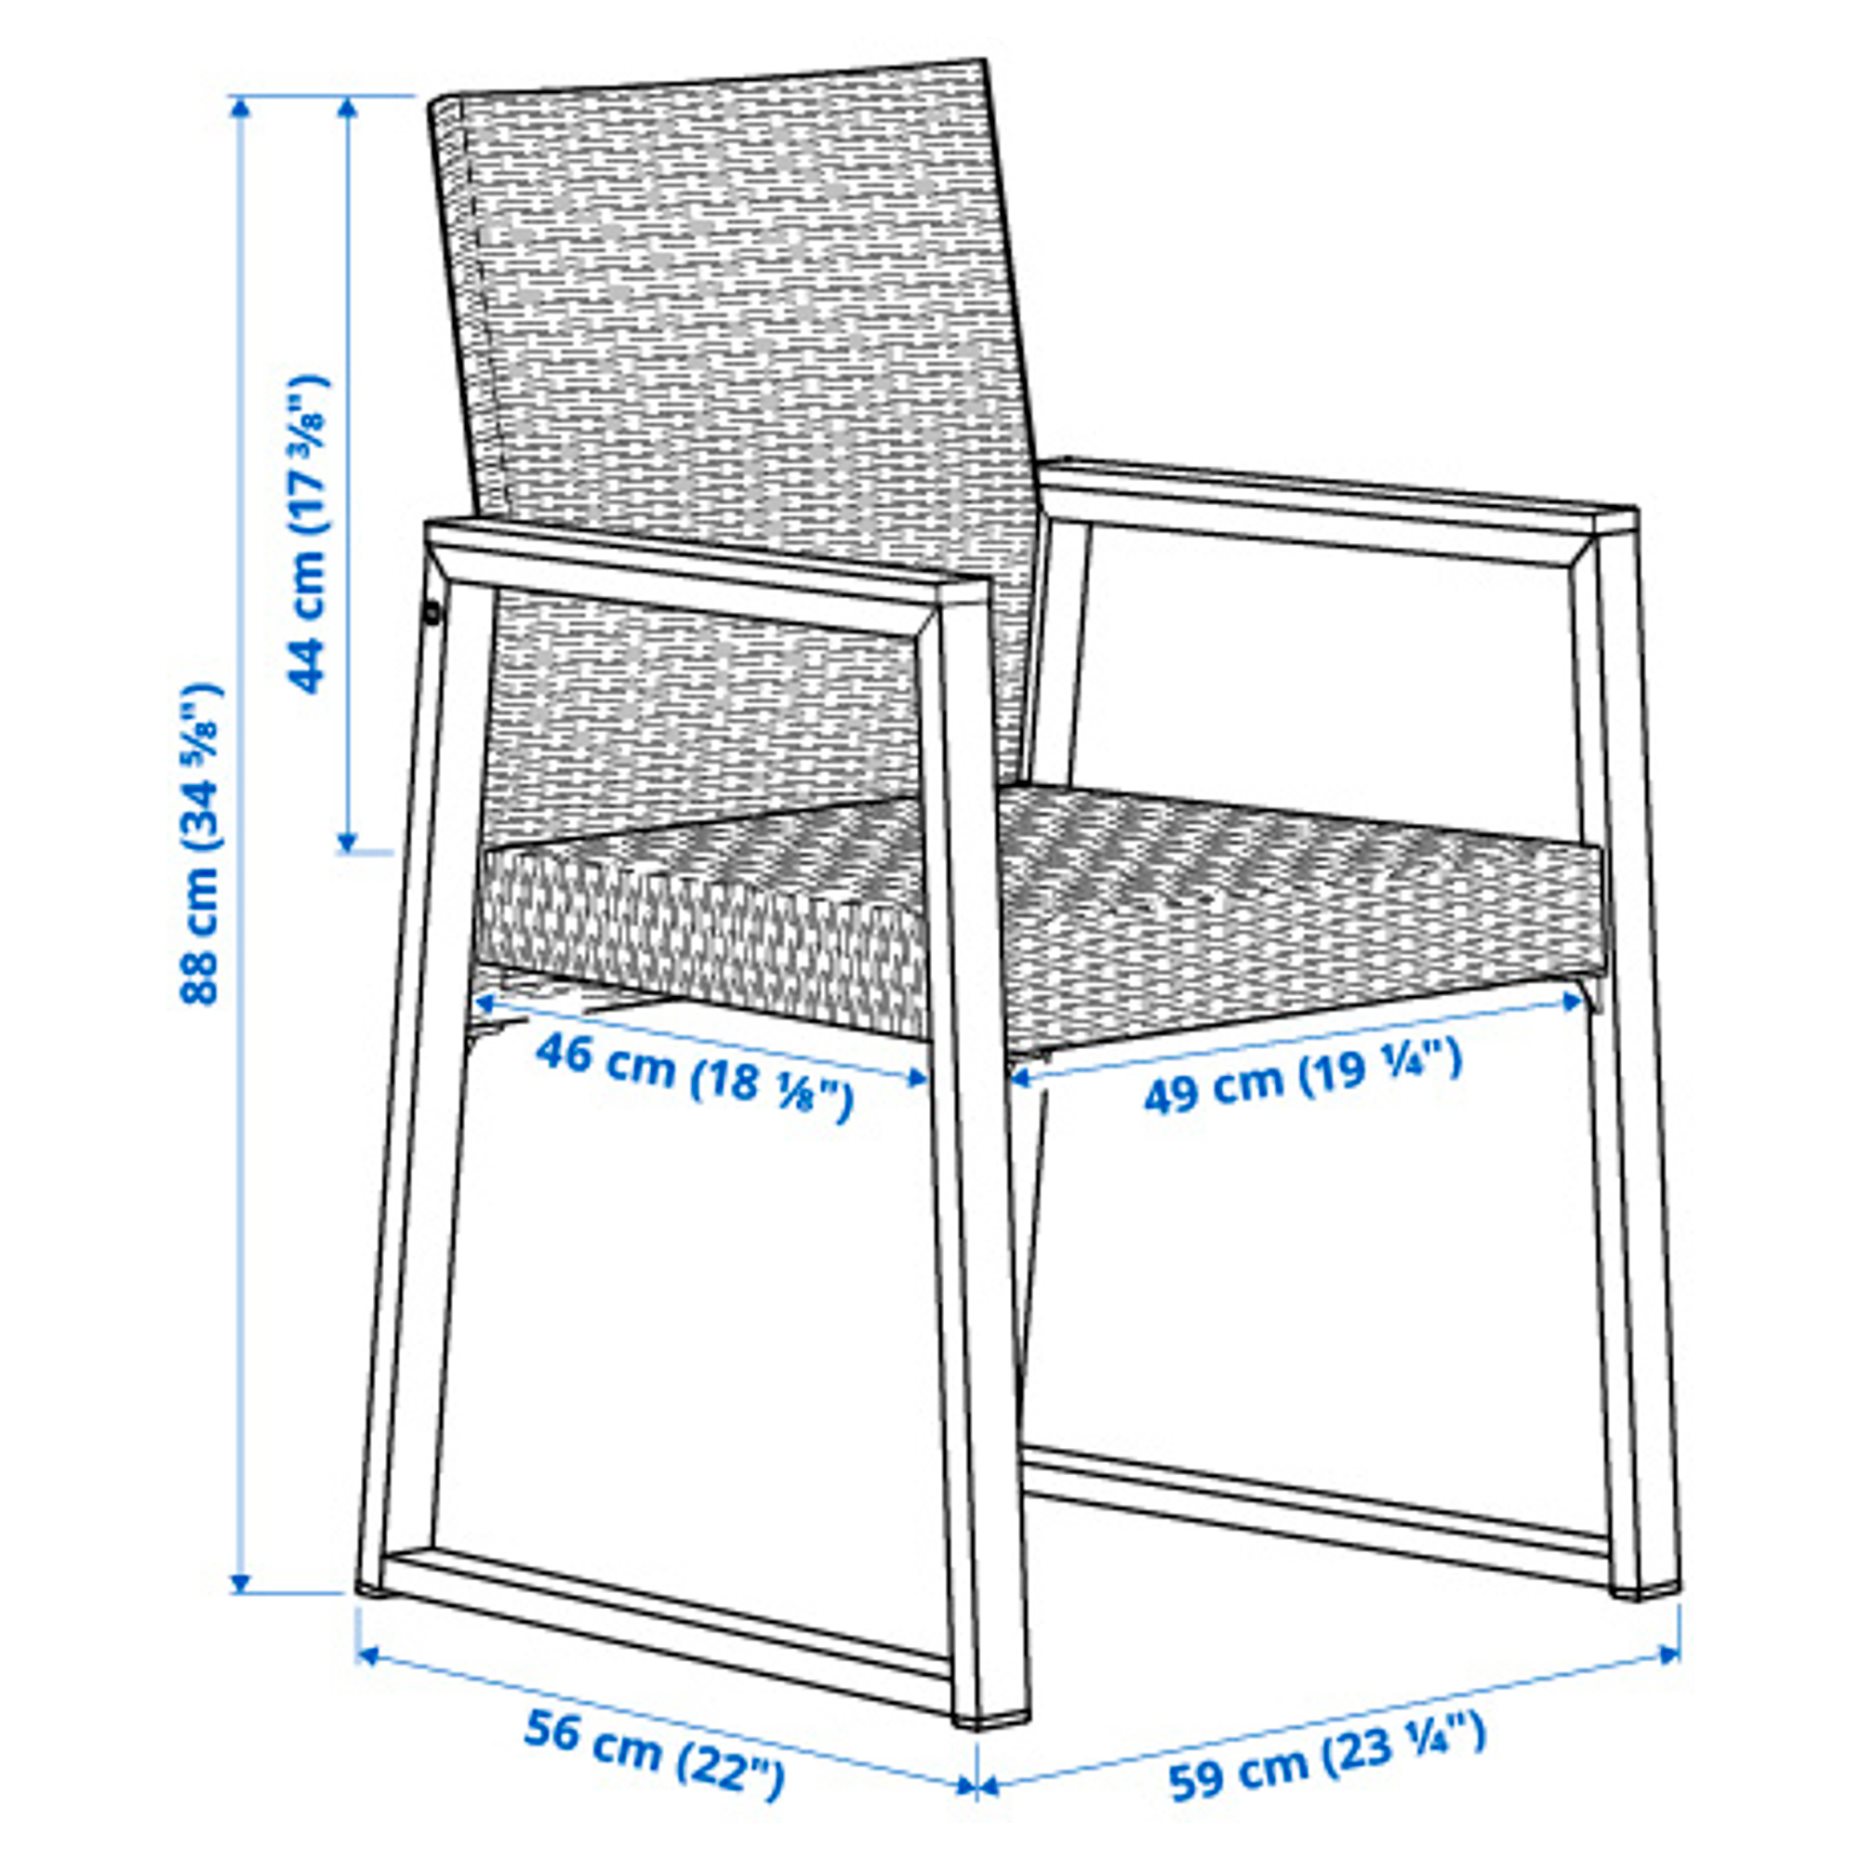 VÄRMANSÖ, table/6 chairs/outdoor,, 595.002.13